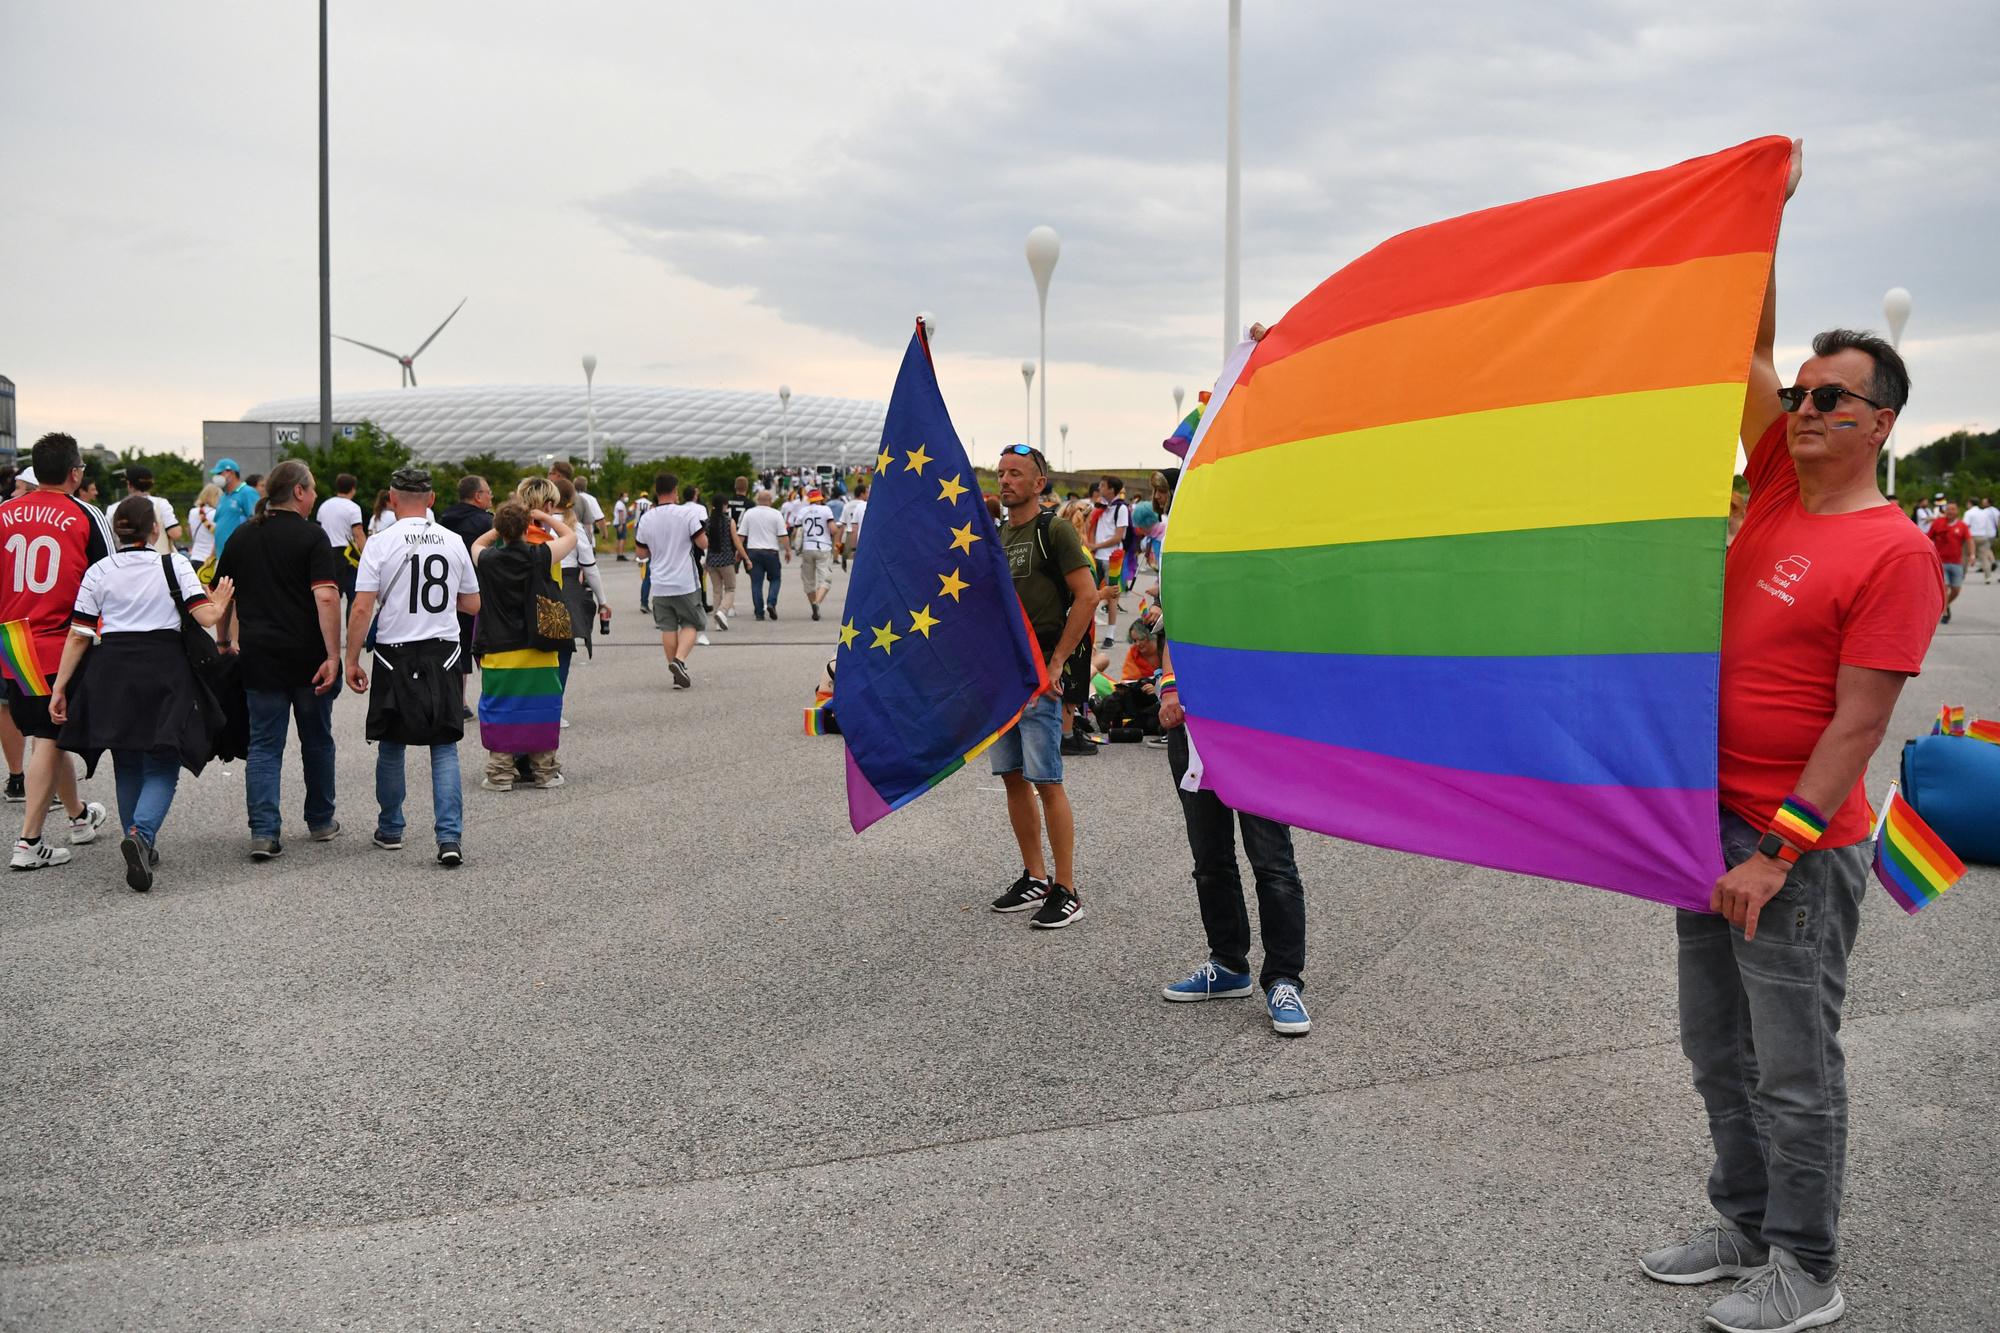 Des supporters de la cause LGBT devant le stade de Munich.